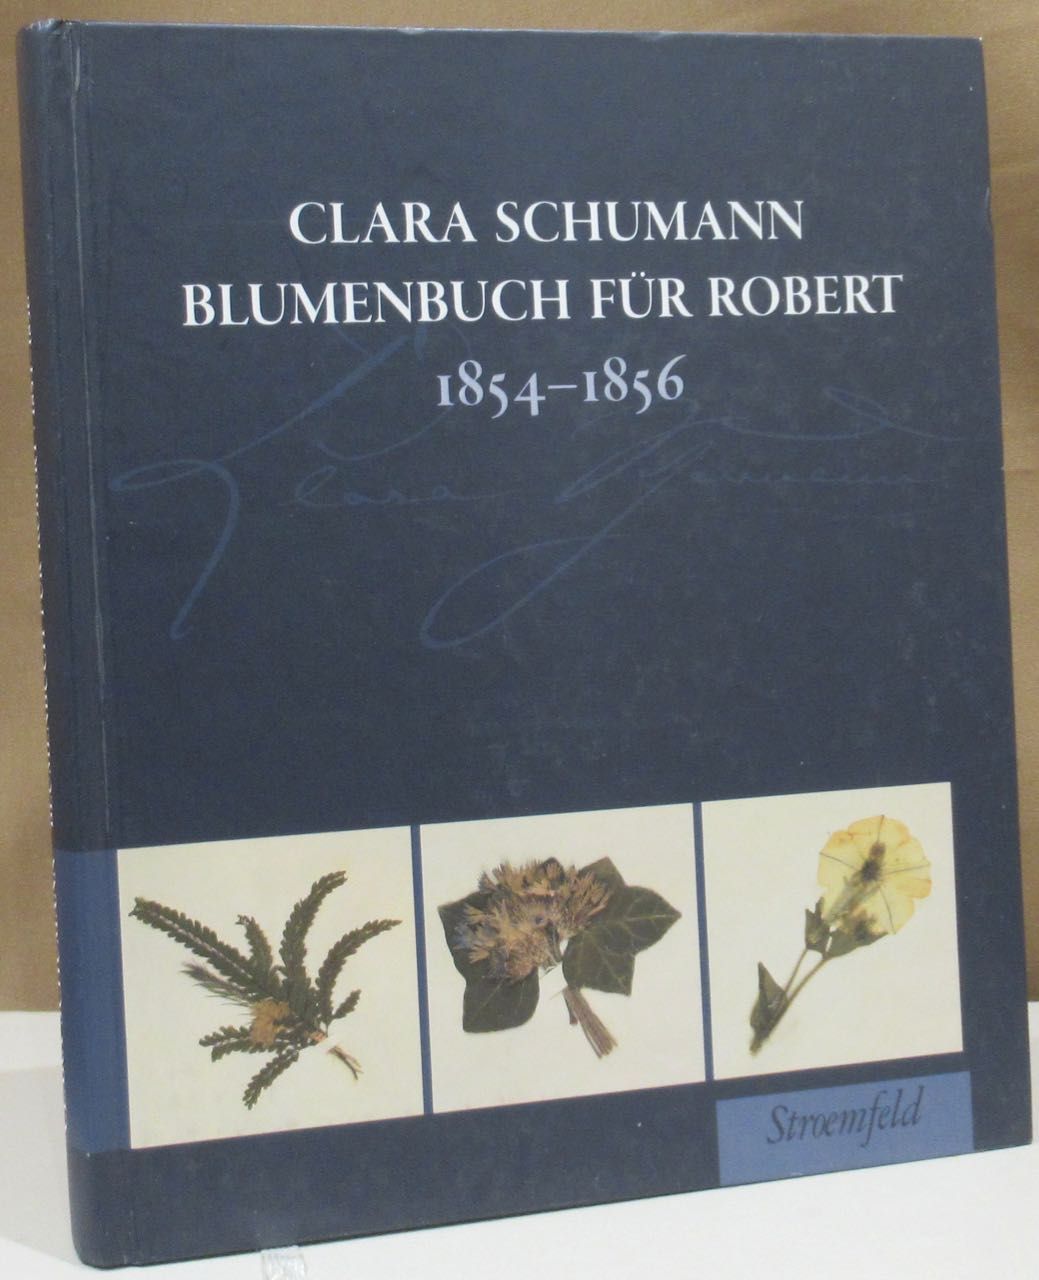 Clara Schumann Blumenbuch für Robert. 1854 - 1856. Hrsg. von Gerd Neuhaus und Ingrid Bodsch unter Mitarbeit von Ute Bär und Susanne Kosmale. - Neuhaus, Gerd und Ingrid Bodsch (Hrsg.).